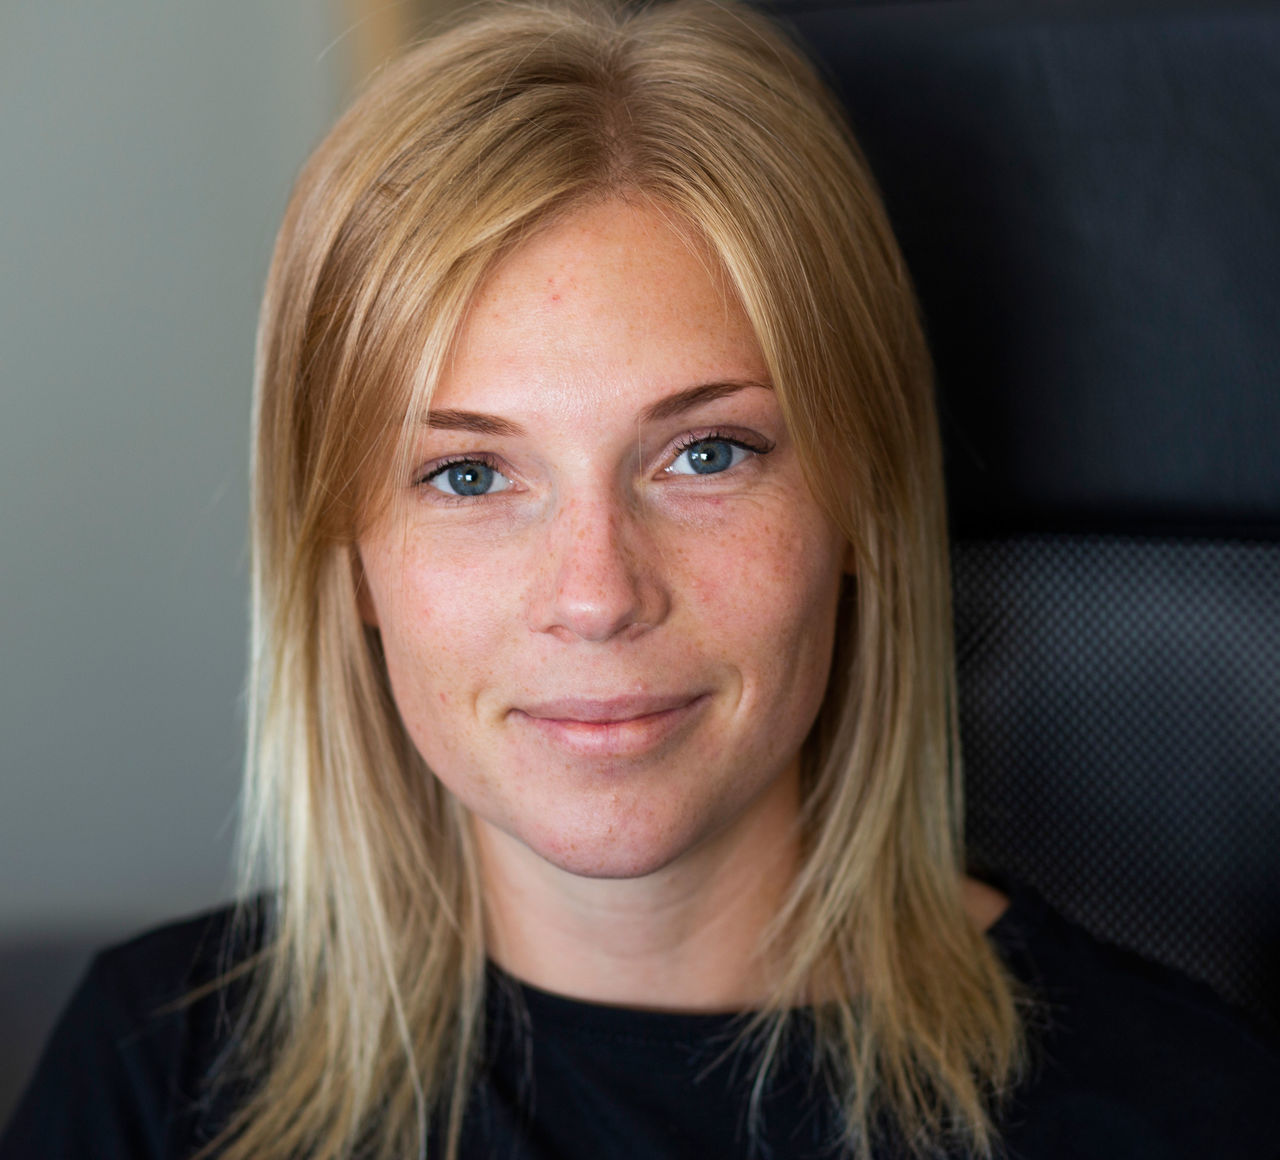 Emma Jenssen alumn från Pol.kand.